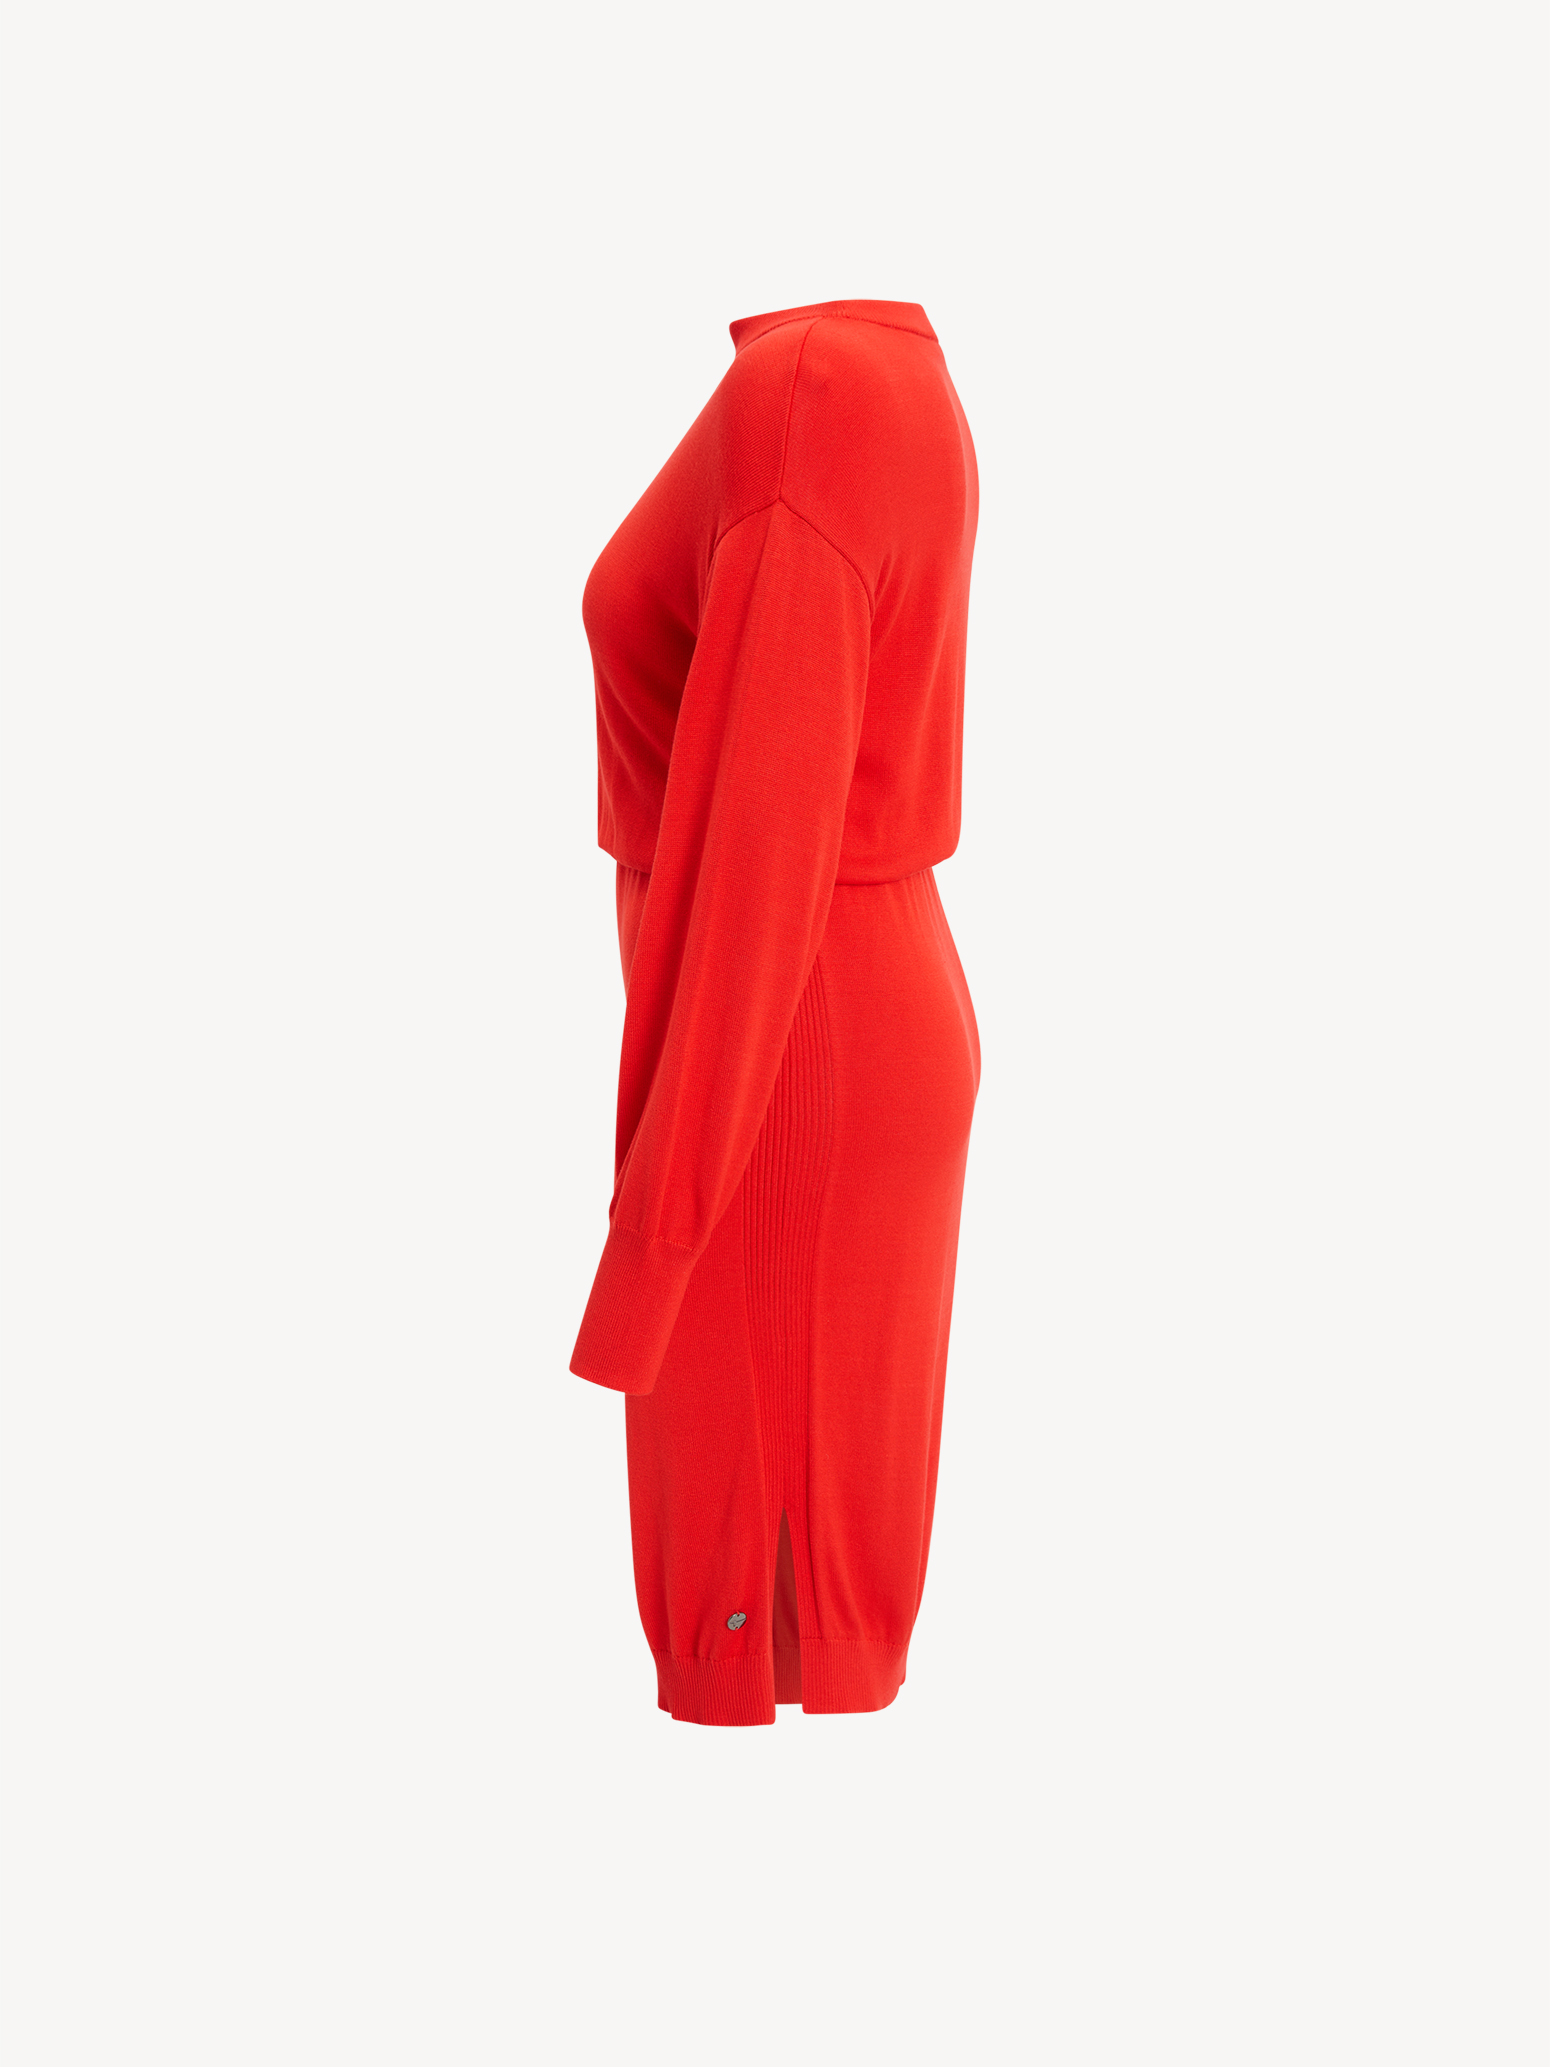 TAW0329-30042: - kaufen! Kleider Tamaris Röcke Kleid rot online &